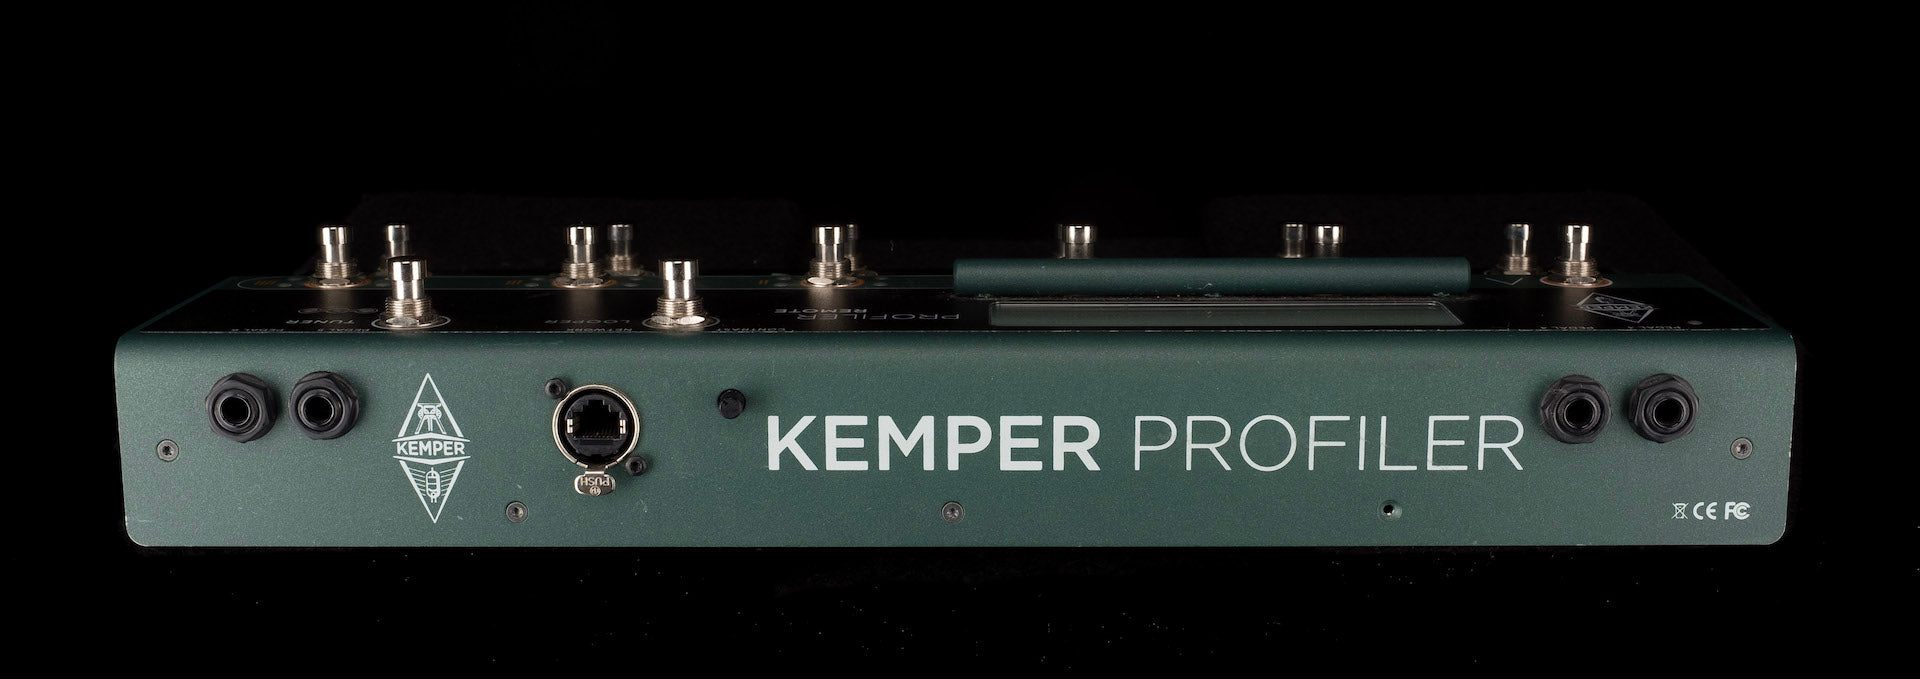 Pre Owned Kemper Profiler Rackmount Unpowered Full Rig